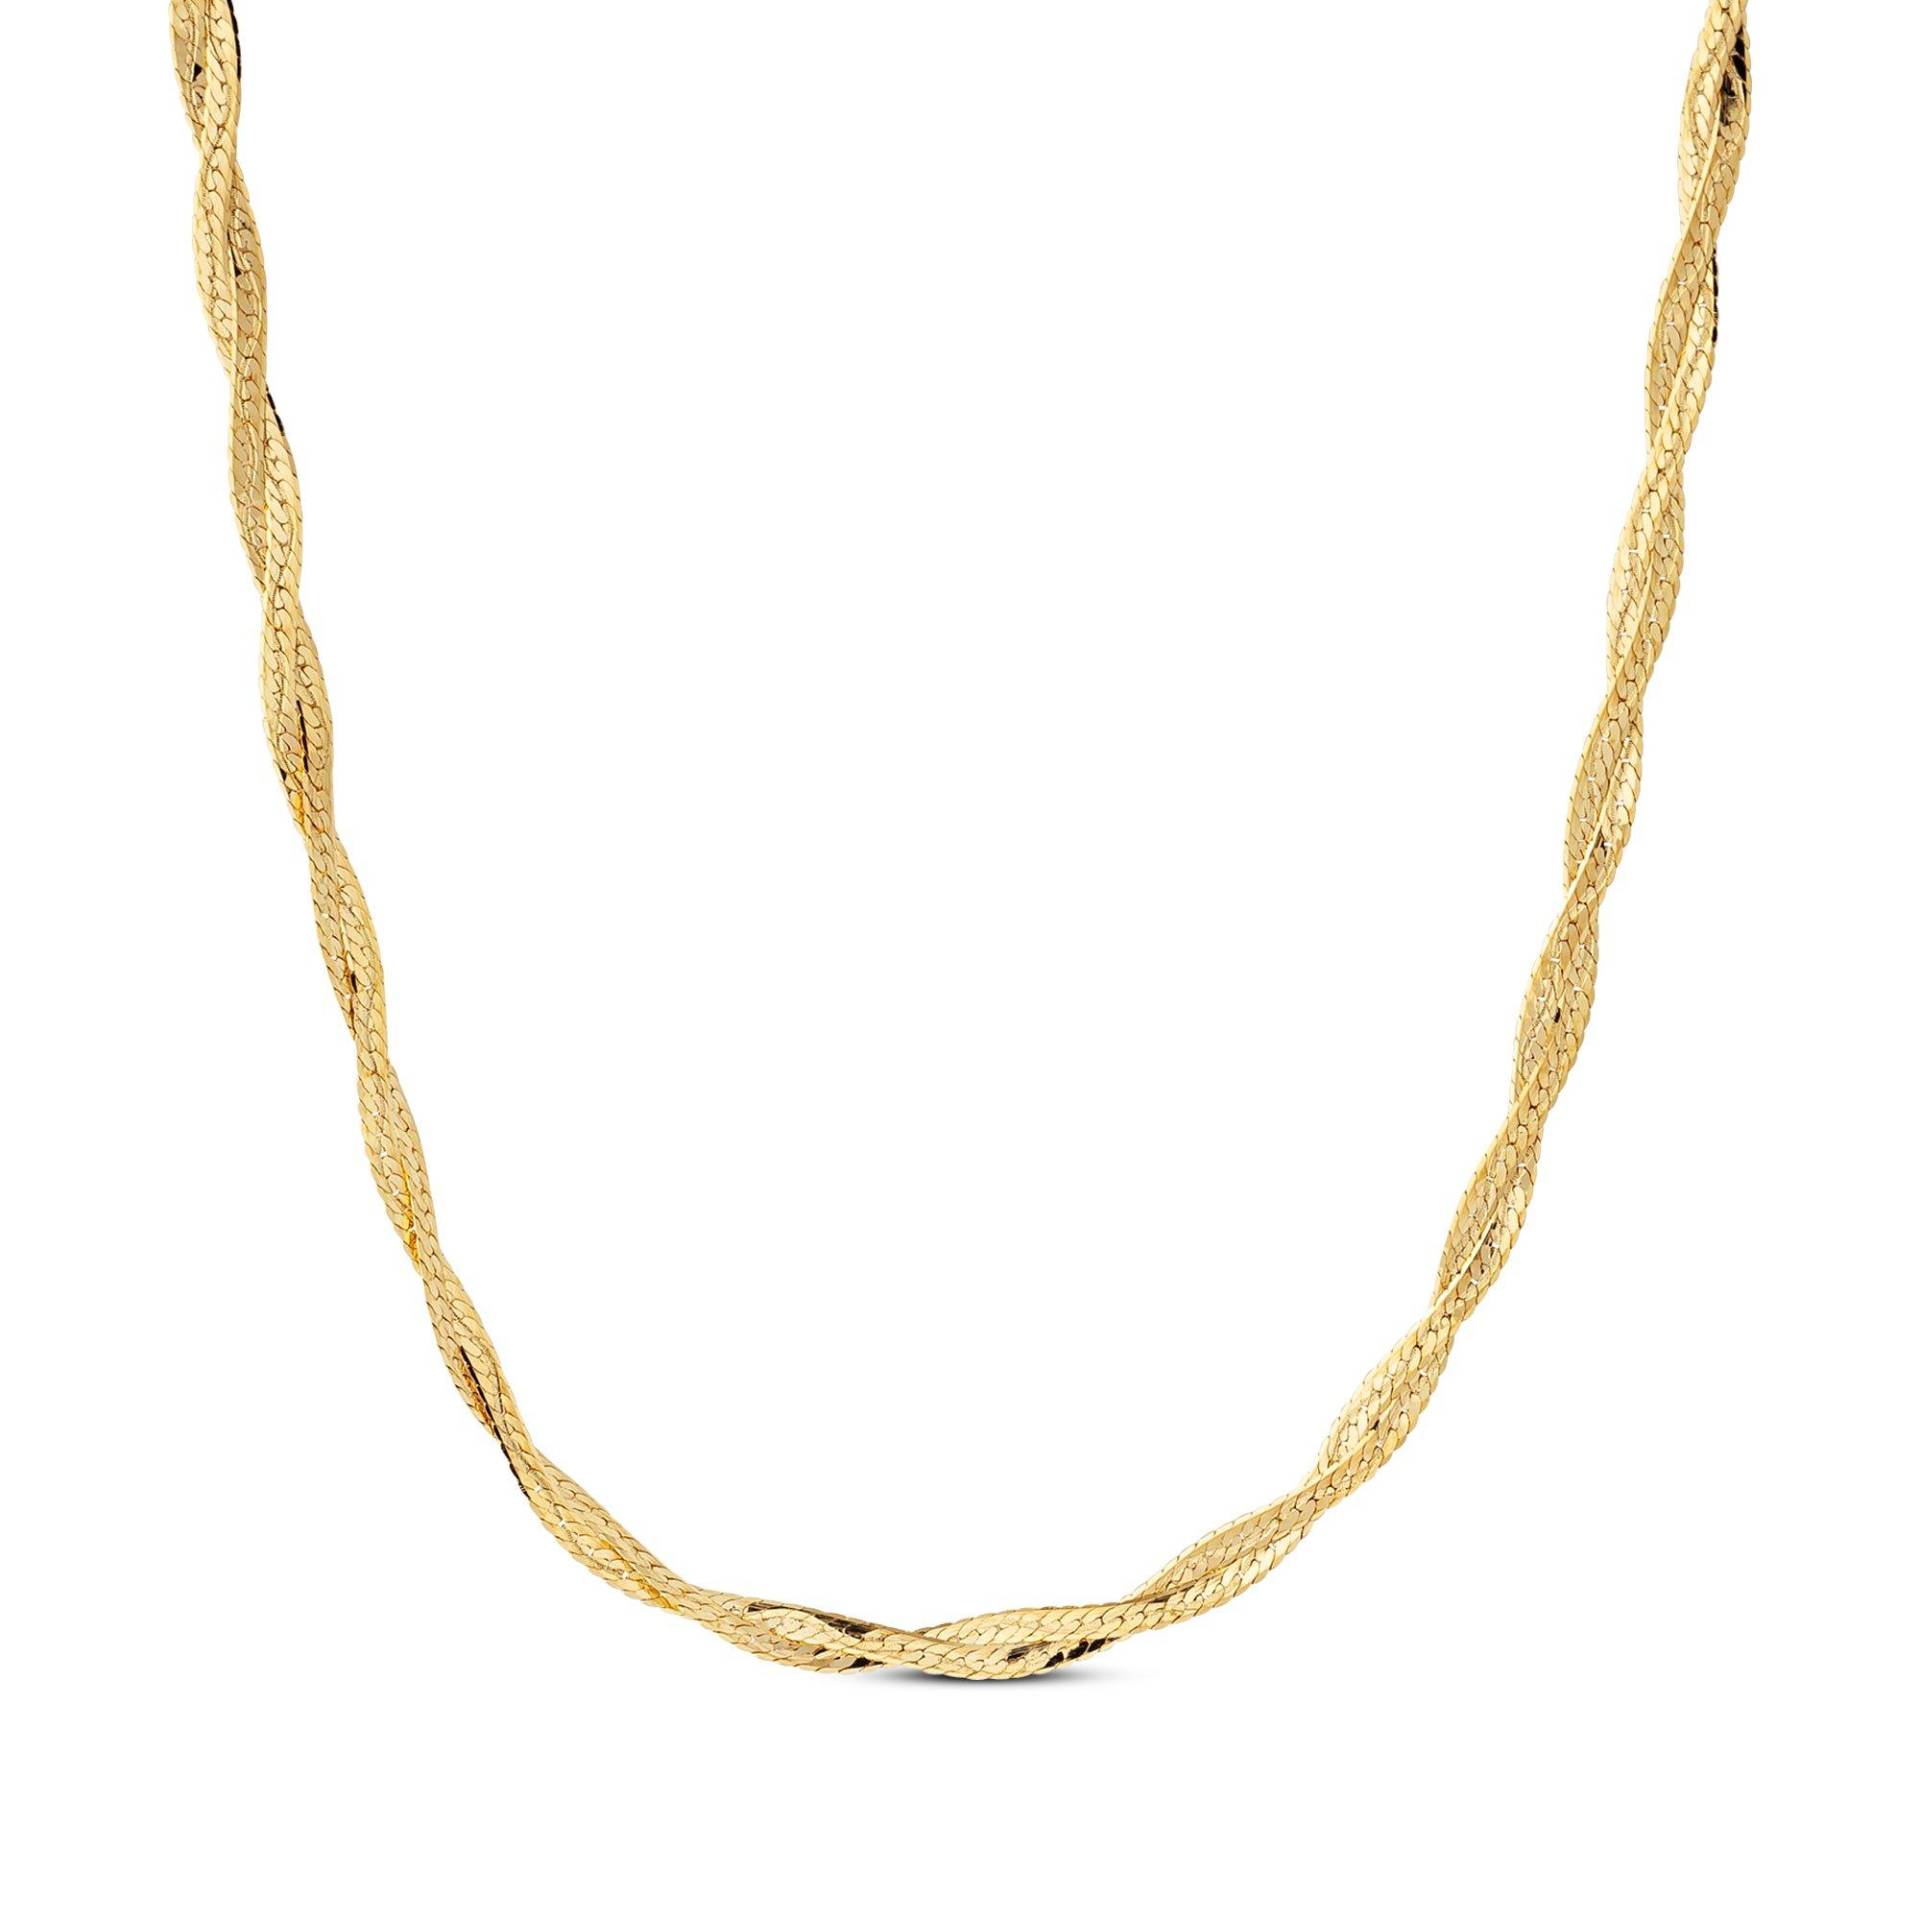 Halskette Damen Gelbgold 45cm von L' Atelier Gold 18 Karat by Manor